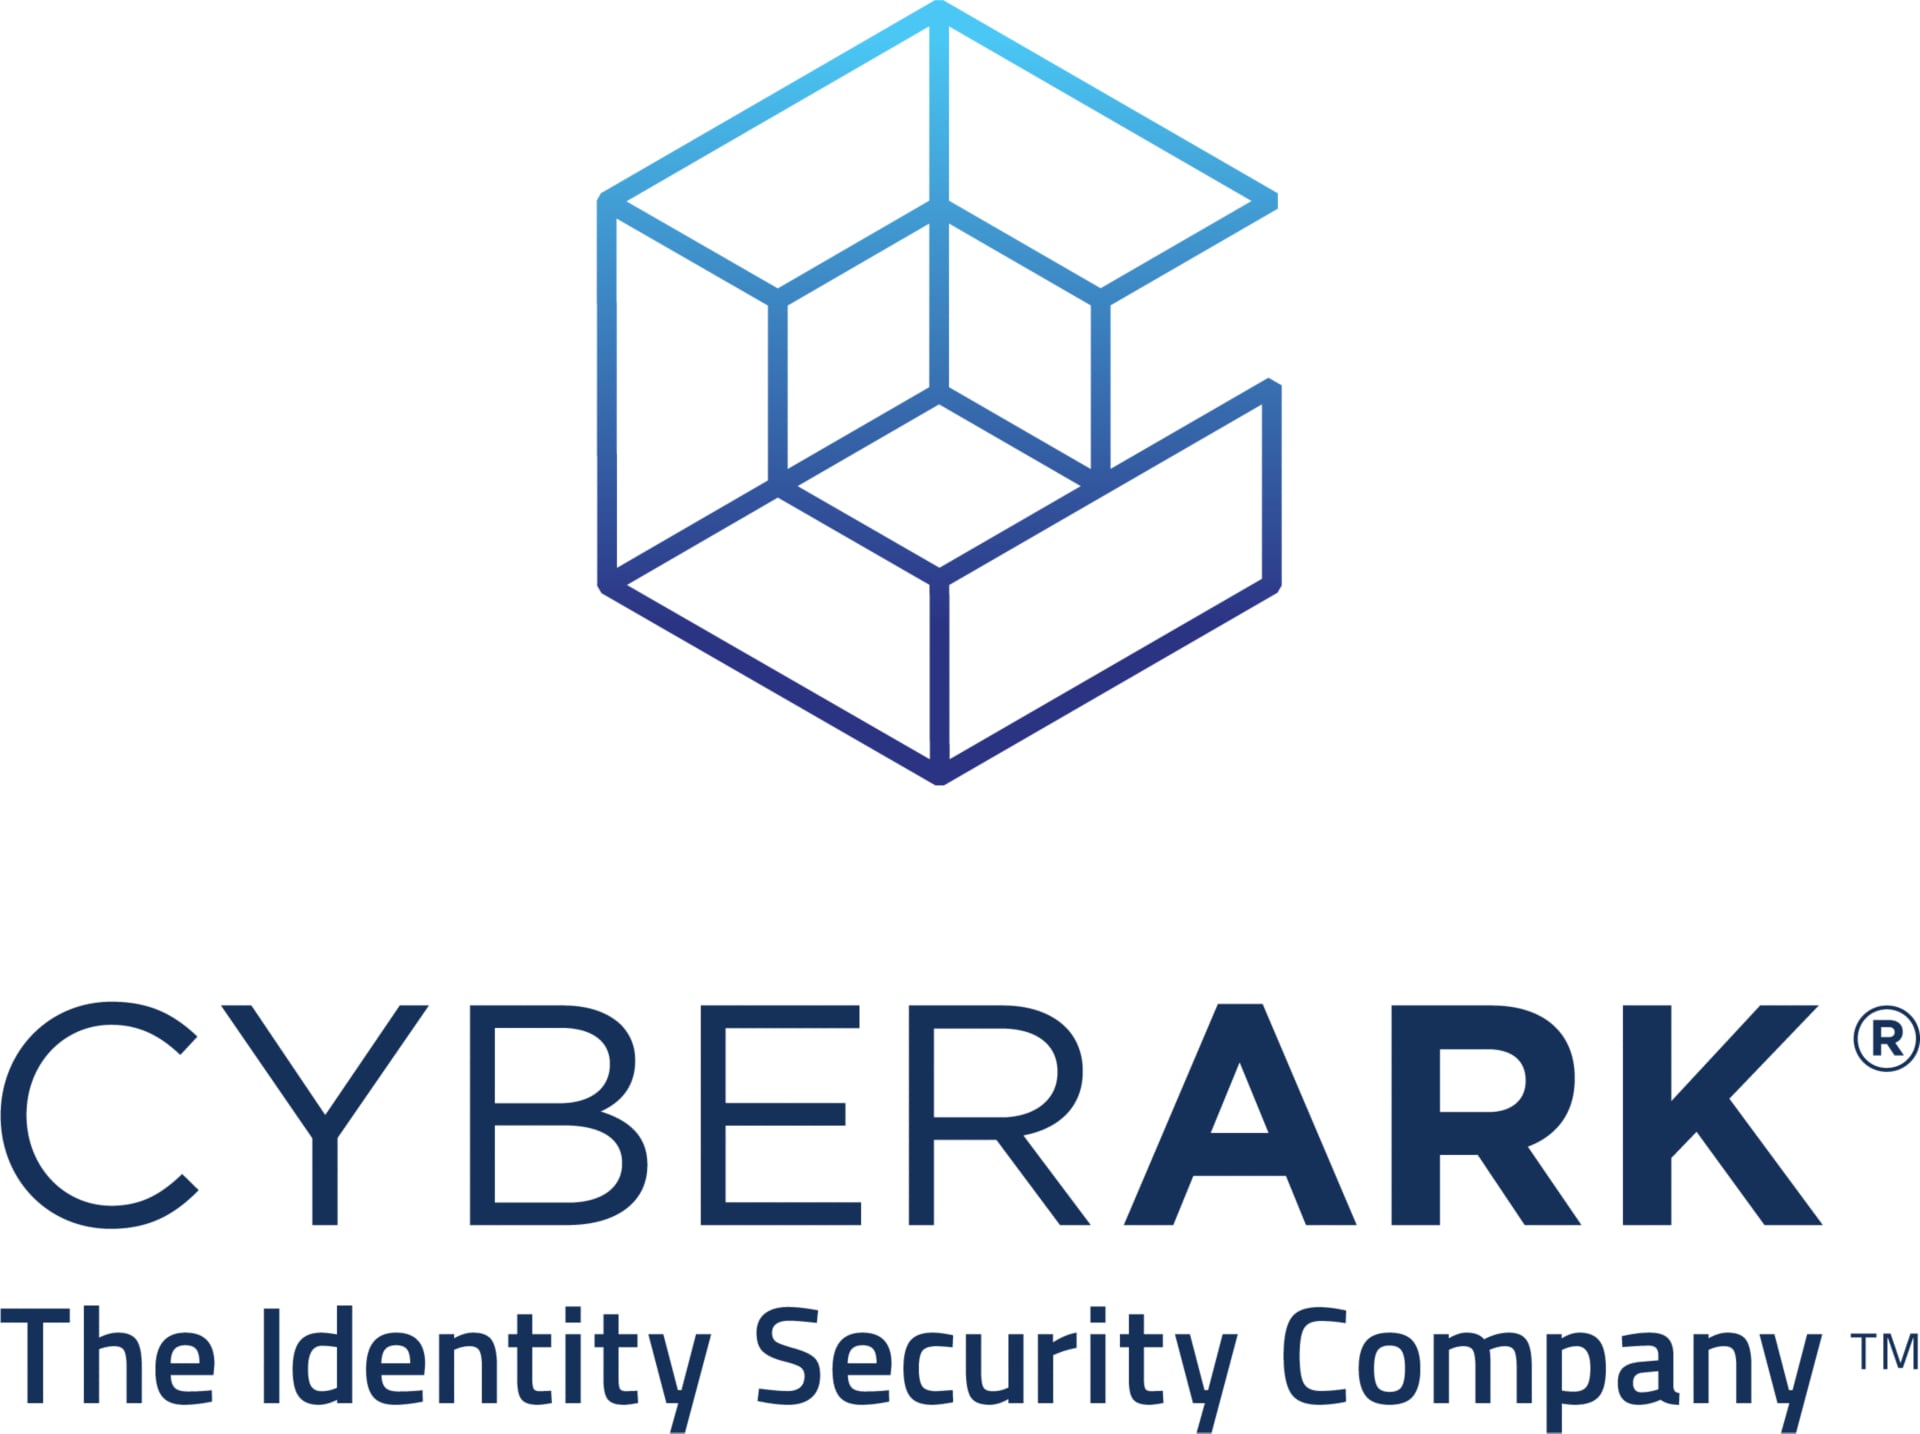 CYBERARK APP ACCESS SERVICE B2E